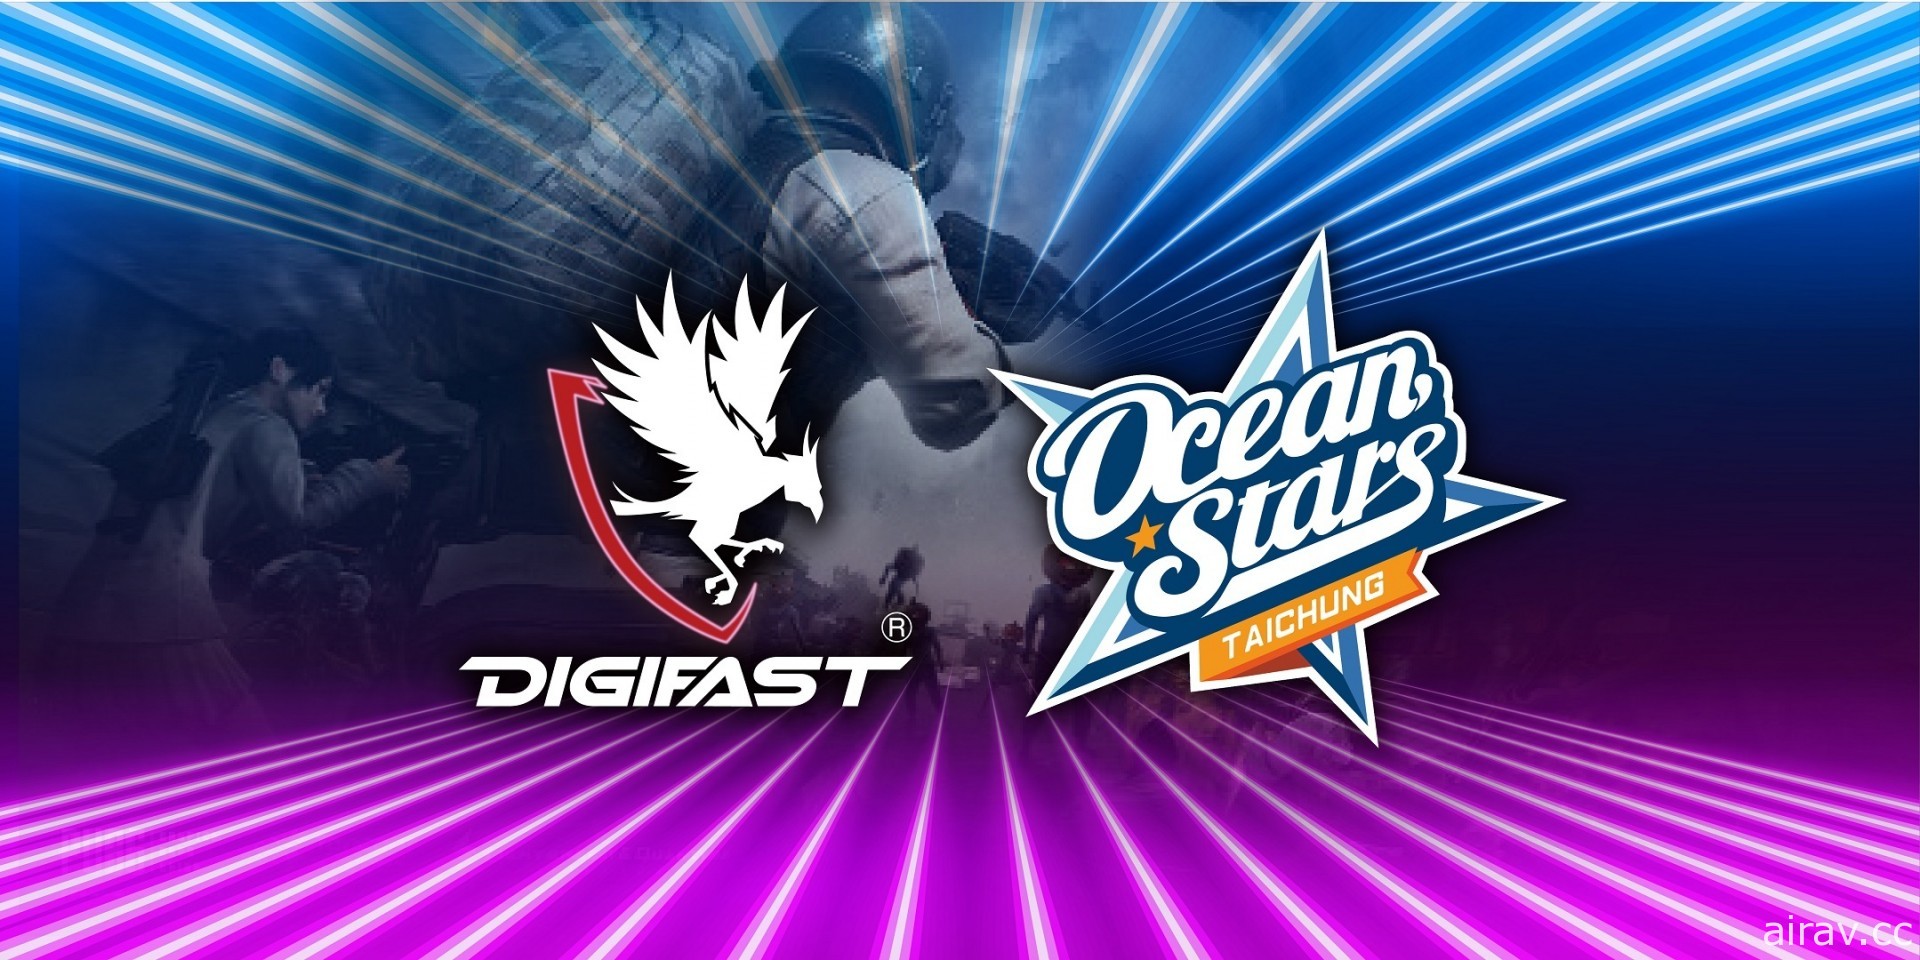 DIGIFAST 電競品牌宣布贊助海洋星職業電競戰隊 OceanStars